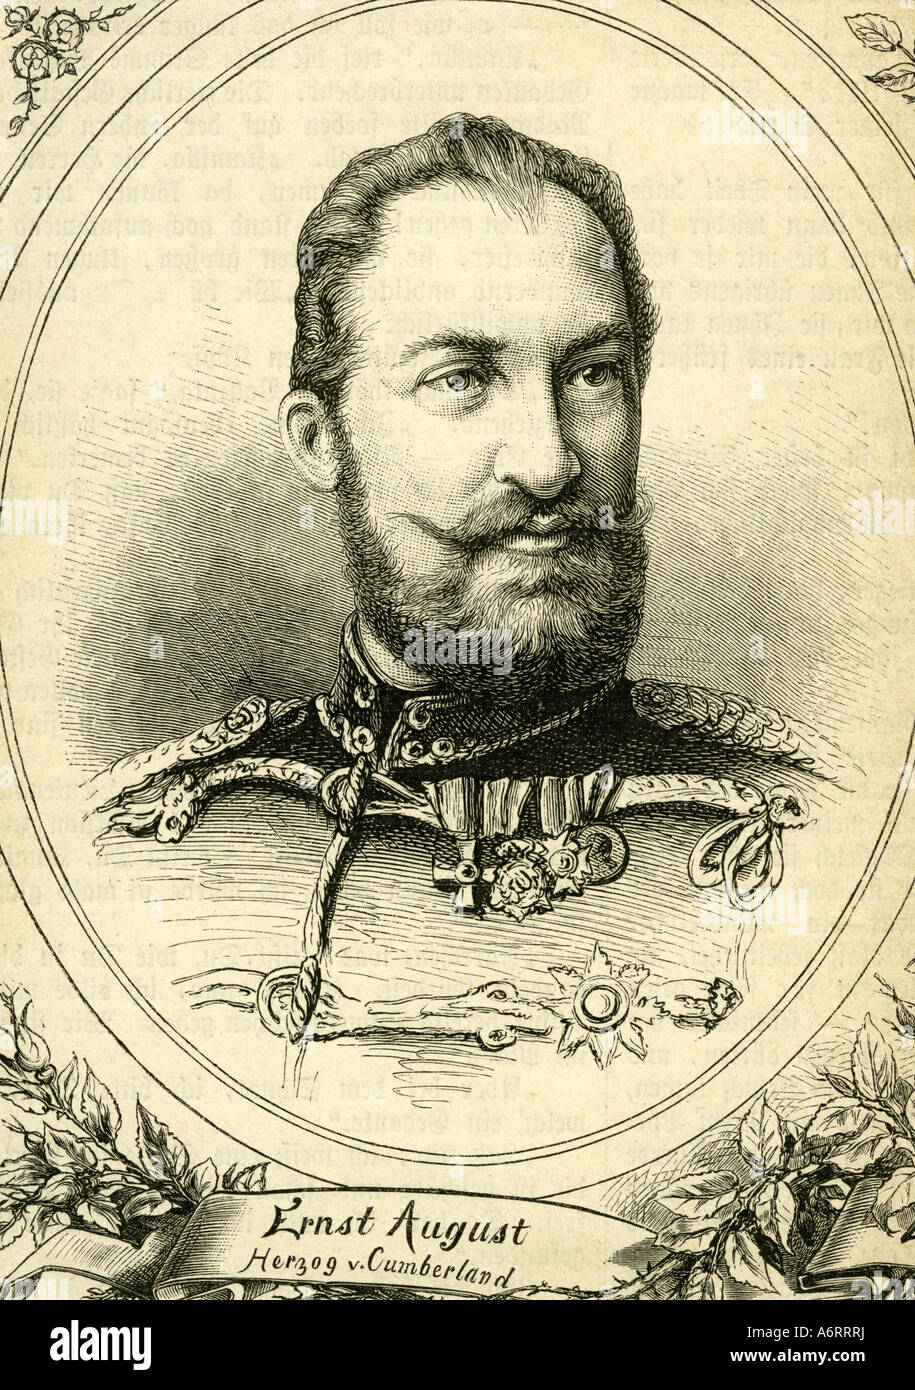 Ernest-auguste, 21.9.1845 - 14.11.1923, 3e duc de Cumberland et Teviotdale 1878 - 1919, portrait, gravure, 19e siècle, W Banque D'Images